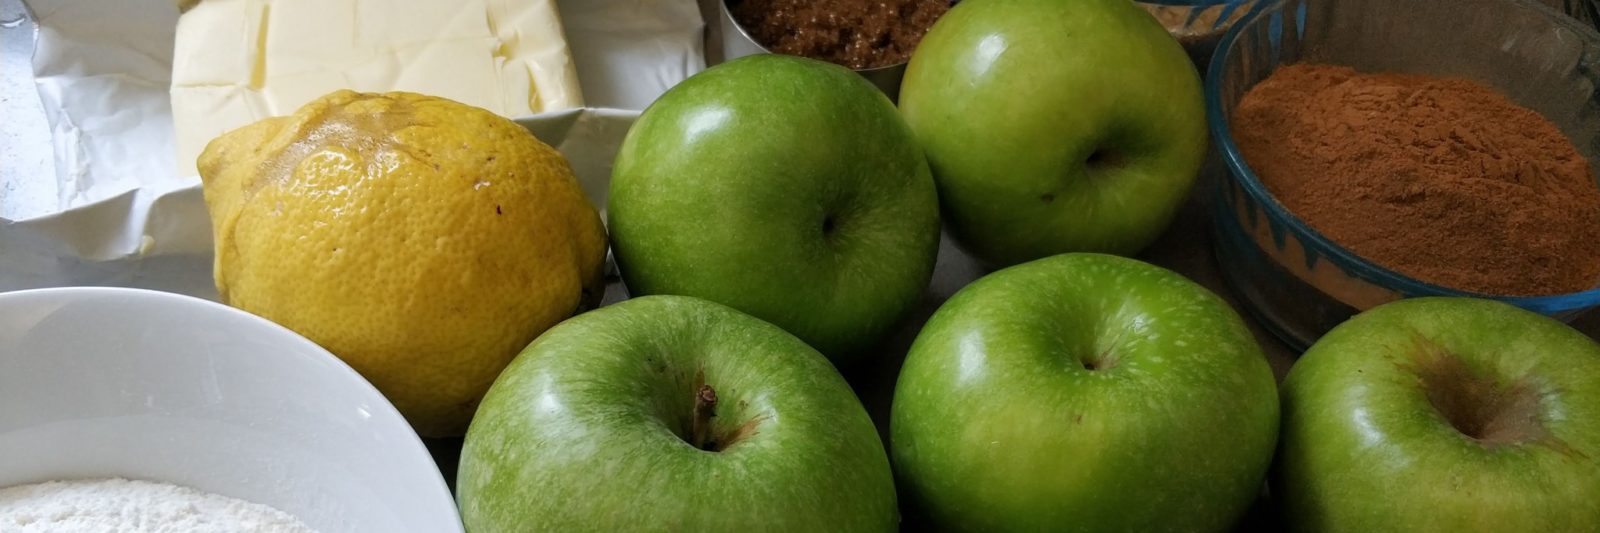 פאי תפוחי העץ של סבתא שומרונה - מצרכים